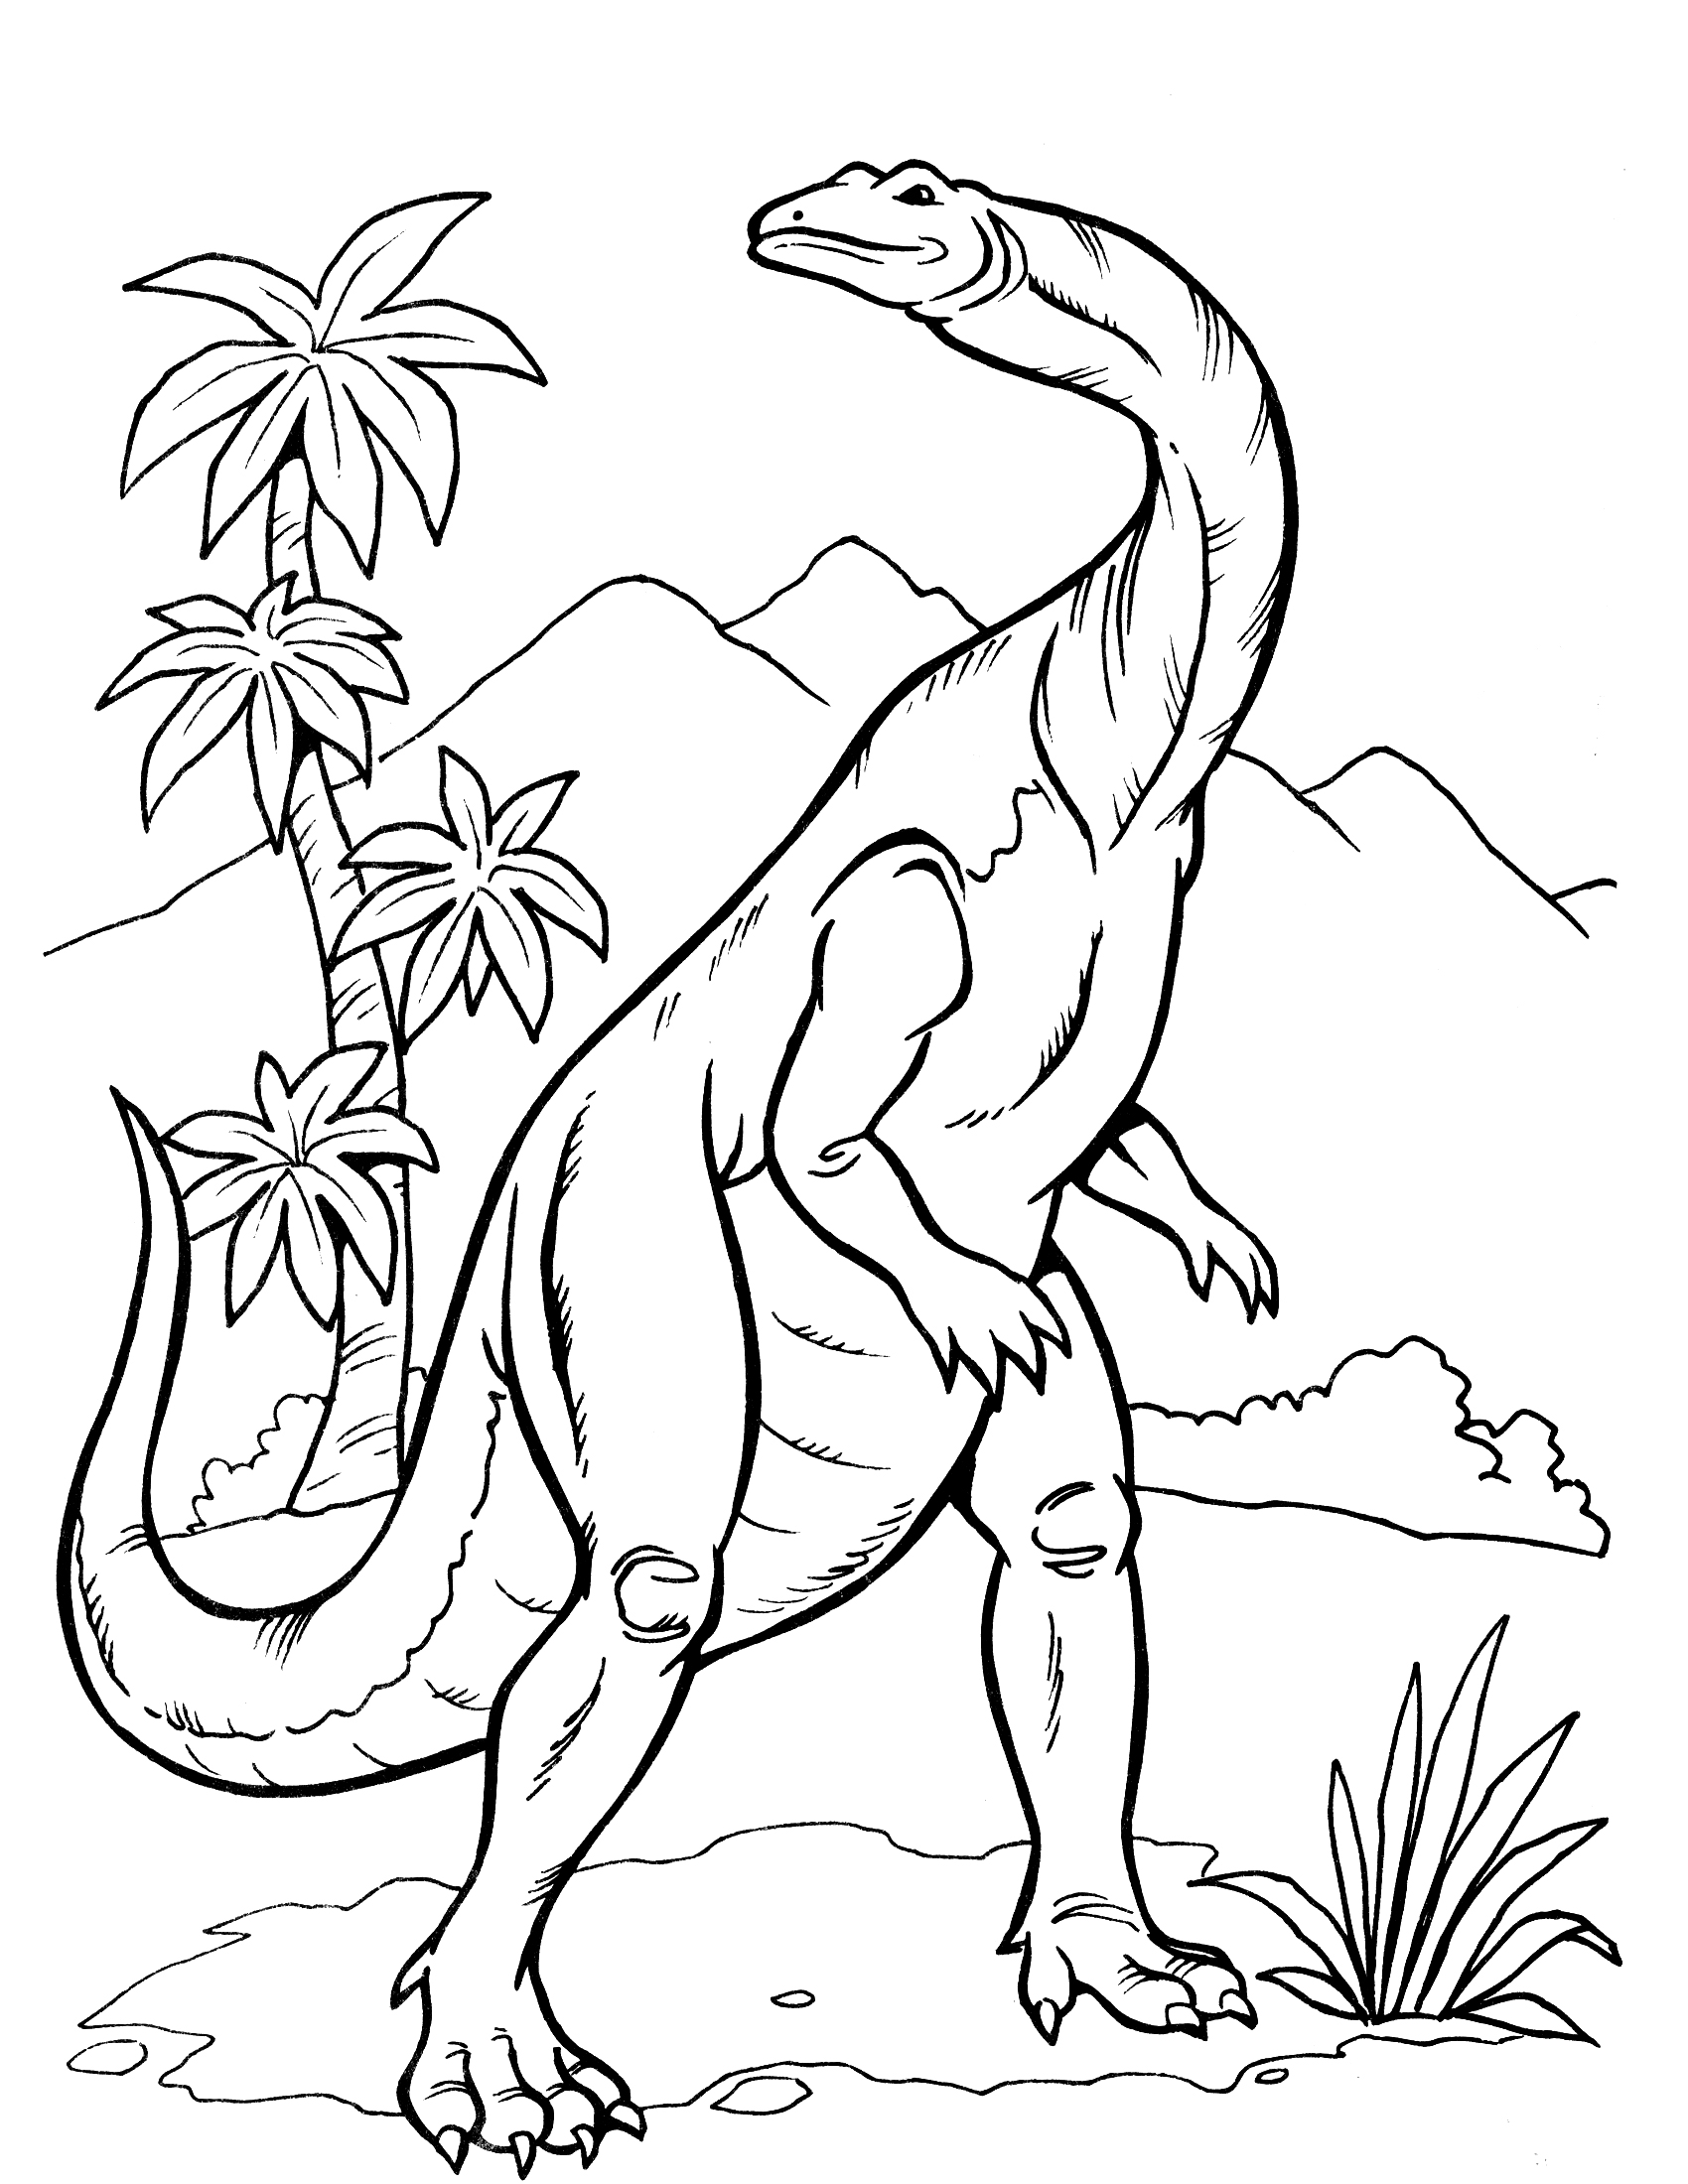 Раскраски динозавры формат а4. Динозавры / раскраска. Динозавры для раскрашивания детям. Раскраски для мальчиков динозавры. Динозавр раскраска для детей.